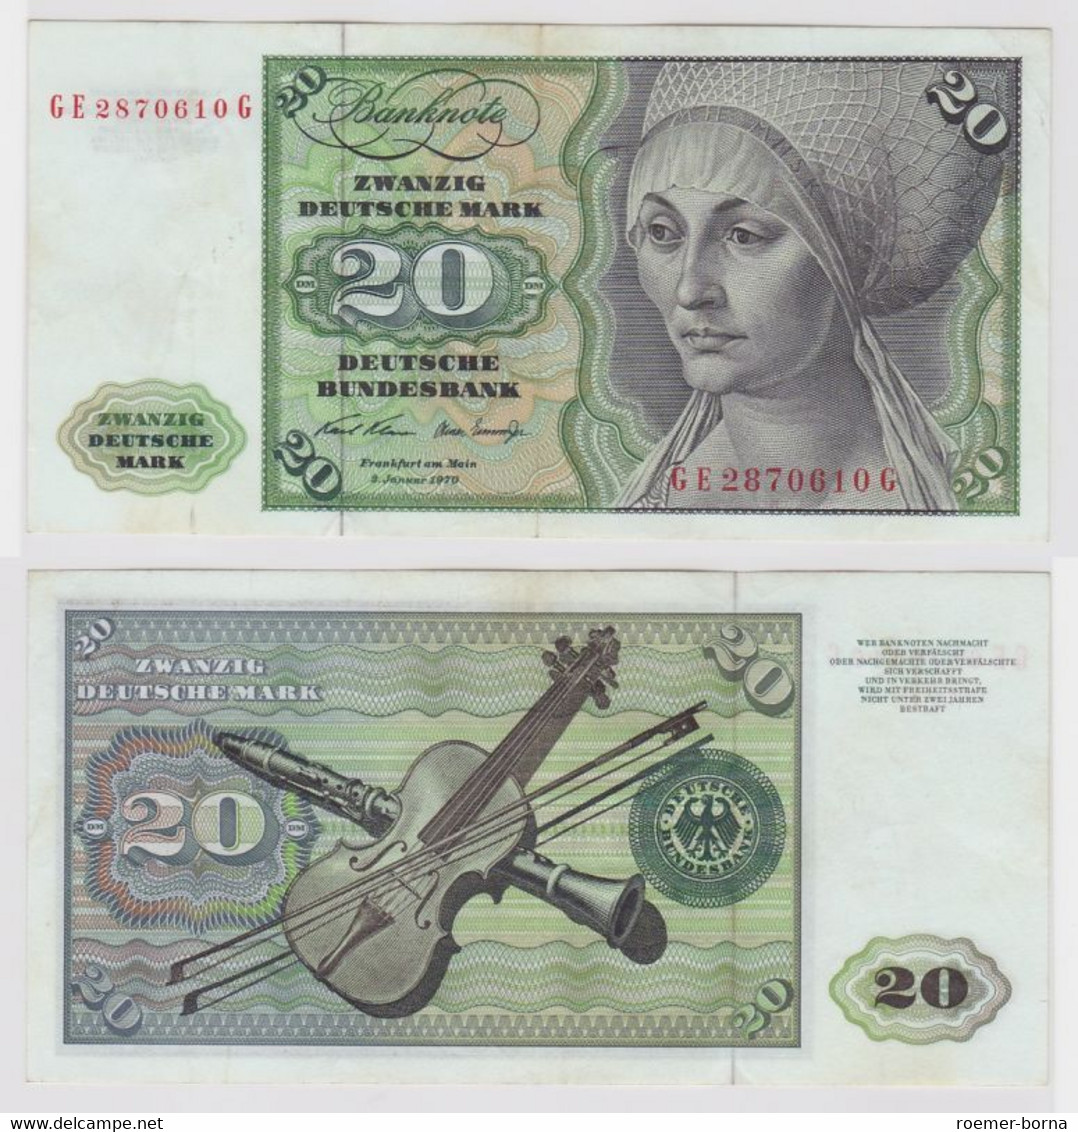 T148197 Banknote 20 DM Deutsche Mark Ro. 271b Schein 2.Jan. 1970 KN GE 2870610 G - 20 Deutsche Mark